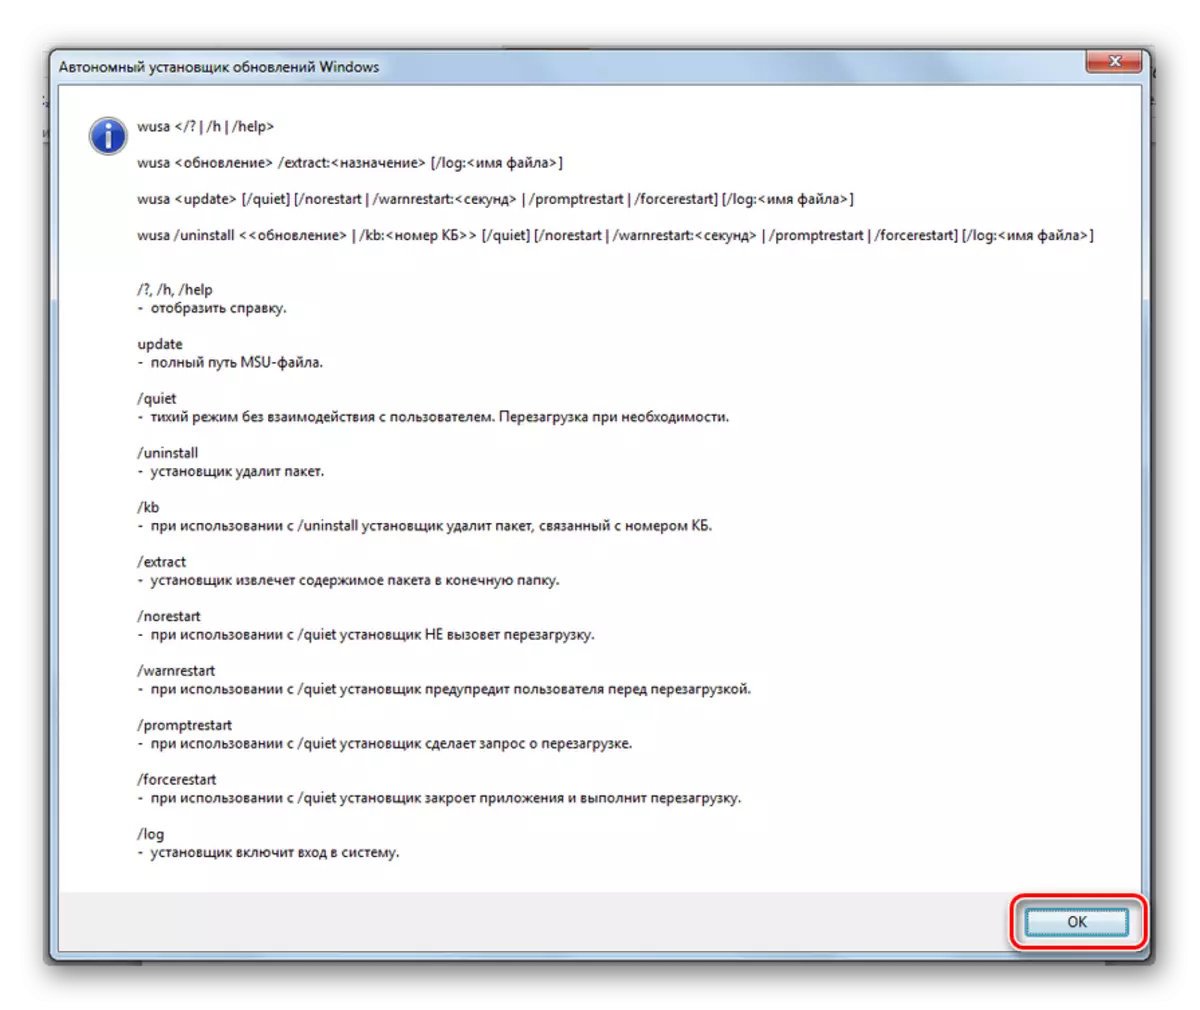 Popis naredbi autonomnih ažuriranja u Windows 7